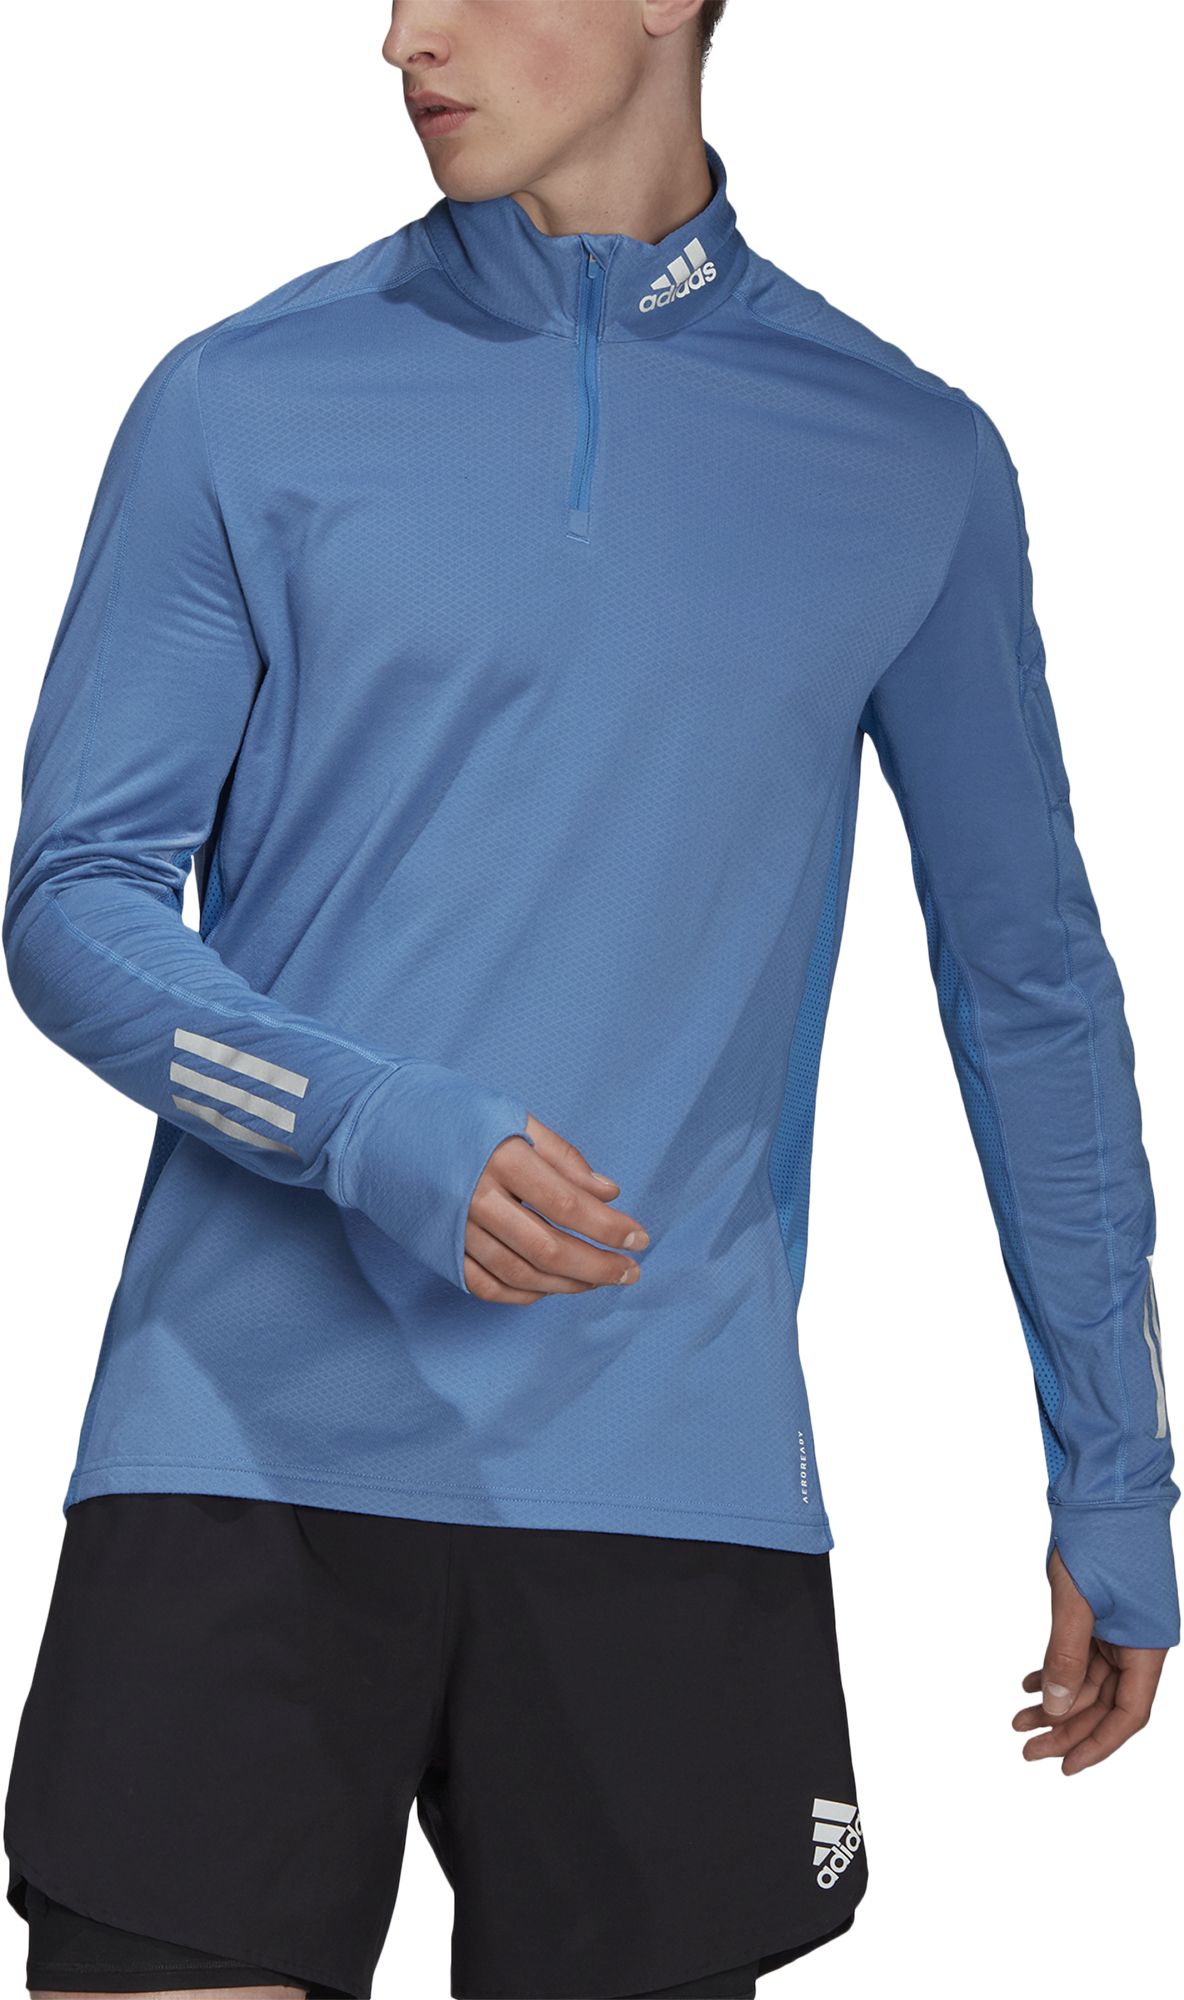 Men's running sweatshirt